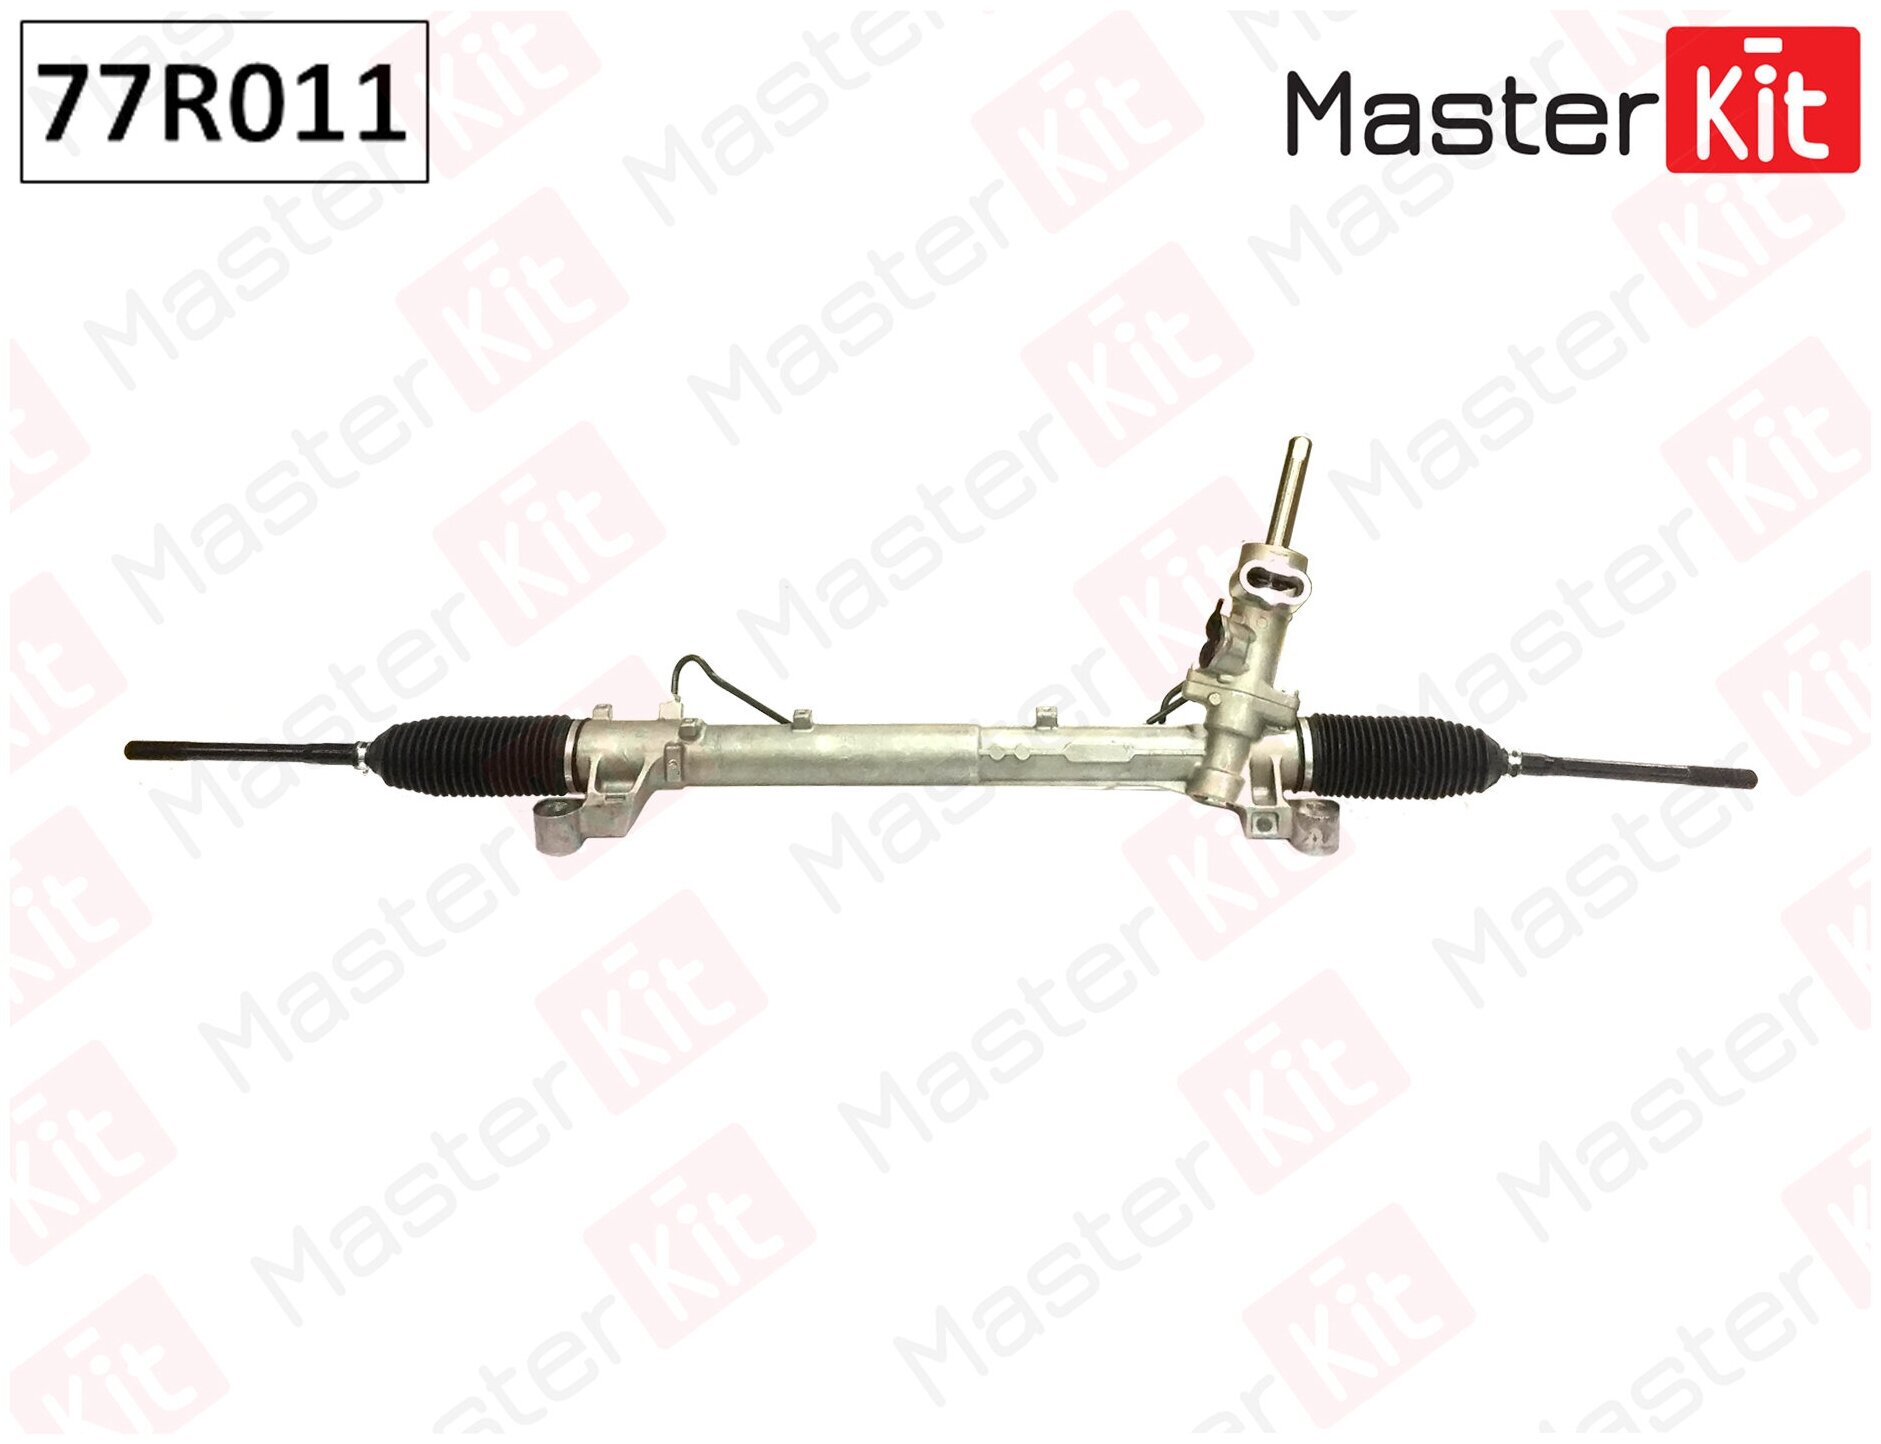 Рулевая рейка Master KiT 77R011